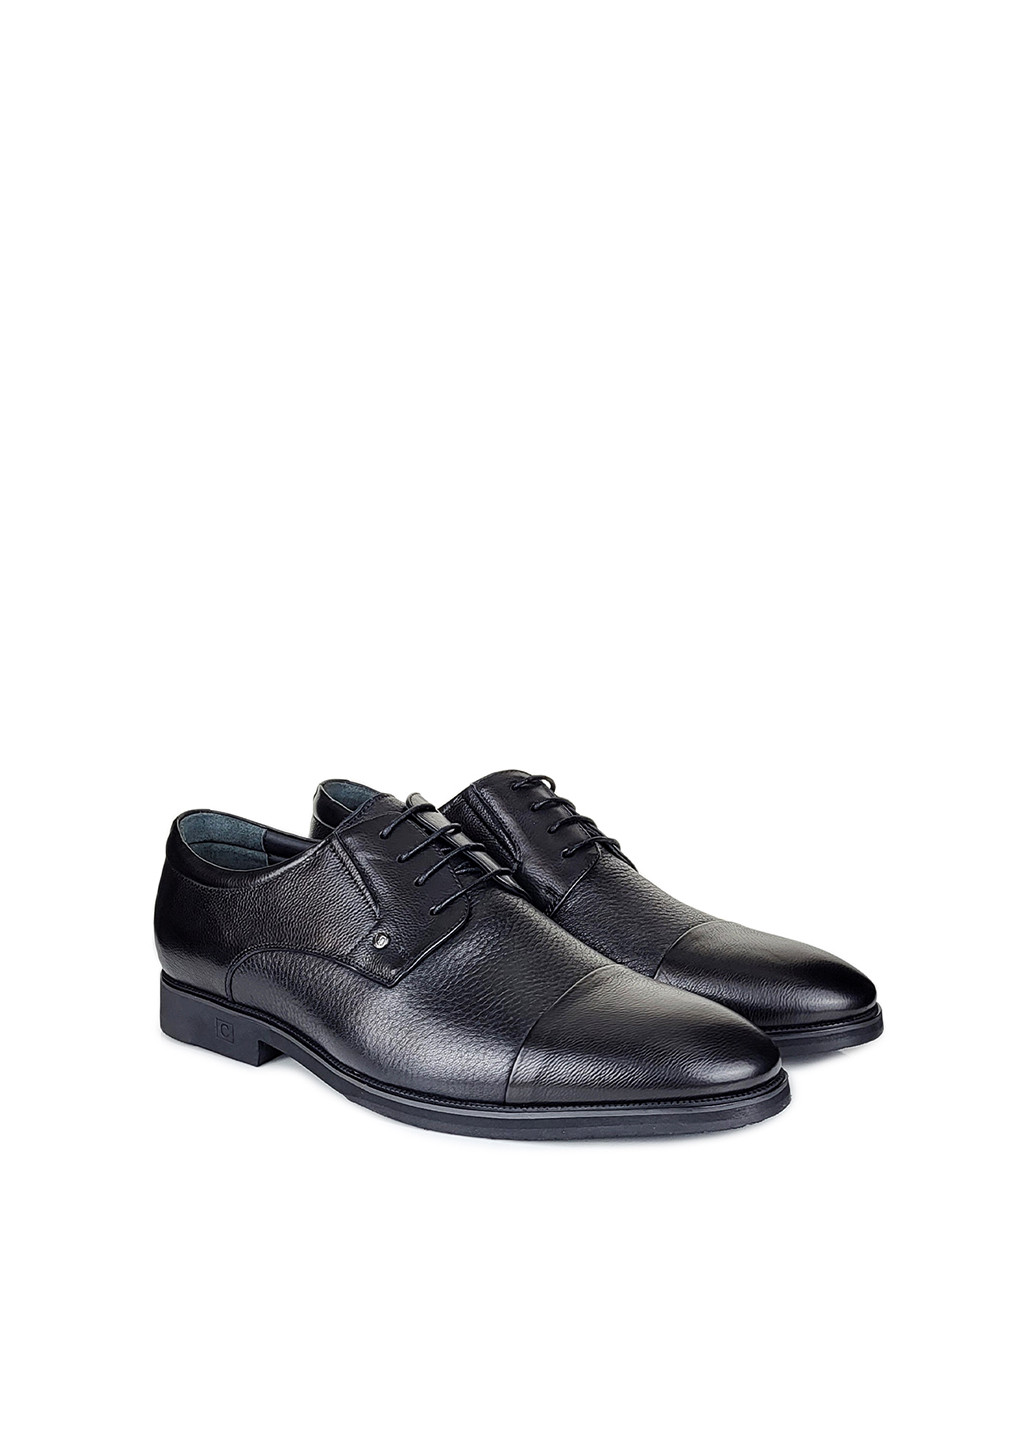 Черные повседневные классические туфли мужские на шнурках демисезон,,s067y-4-f07 черный,39 Cosottinni на шнурках